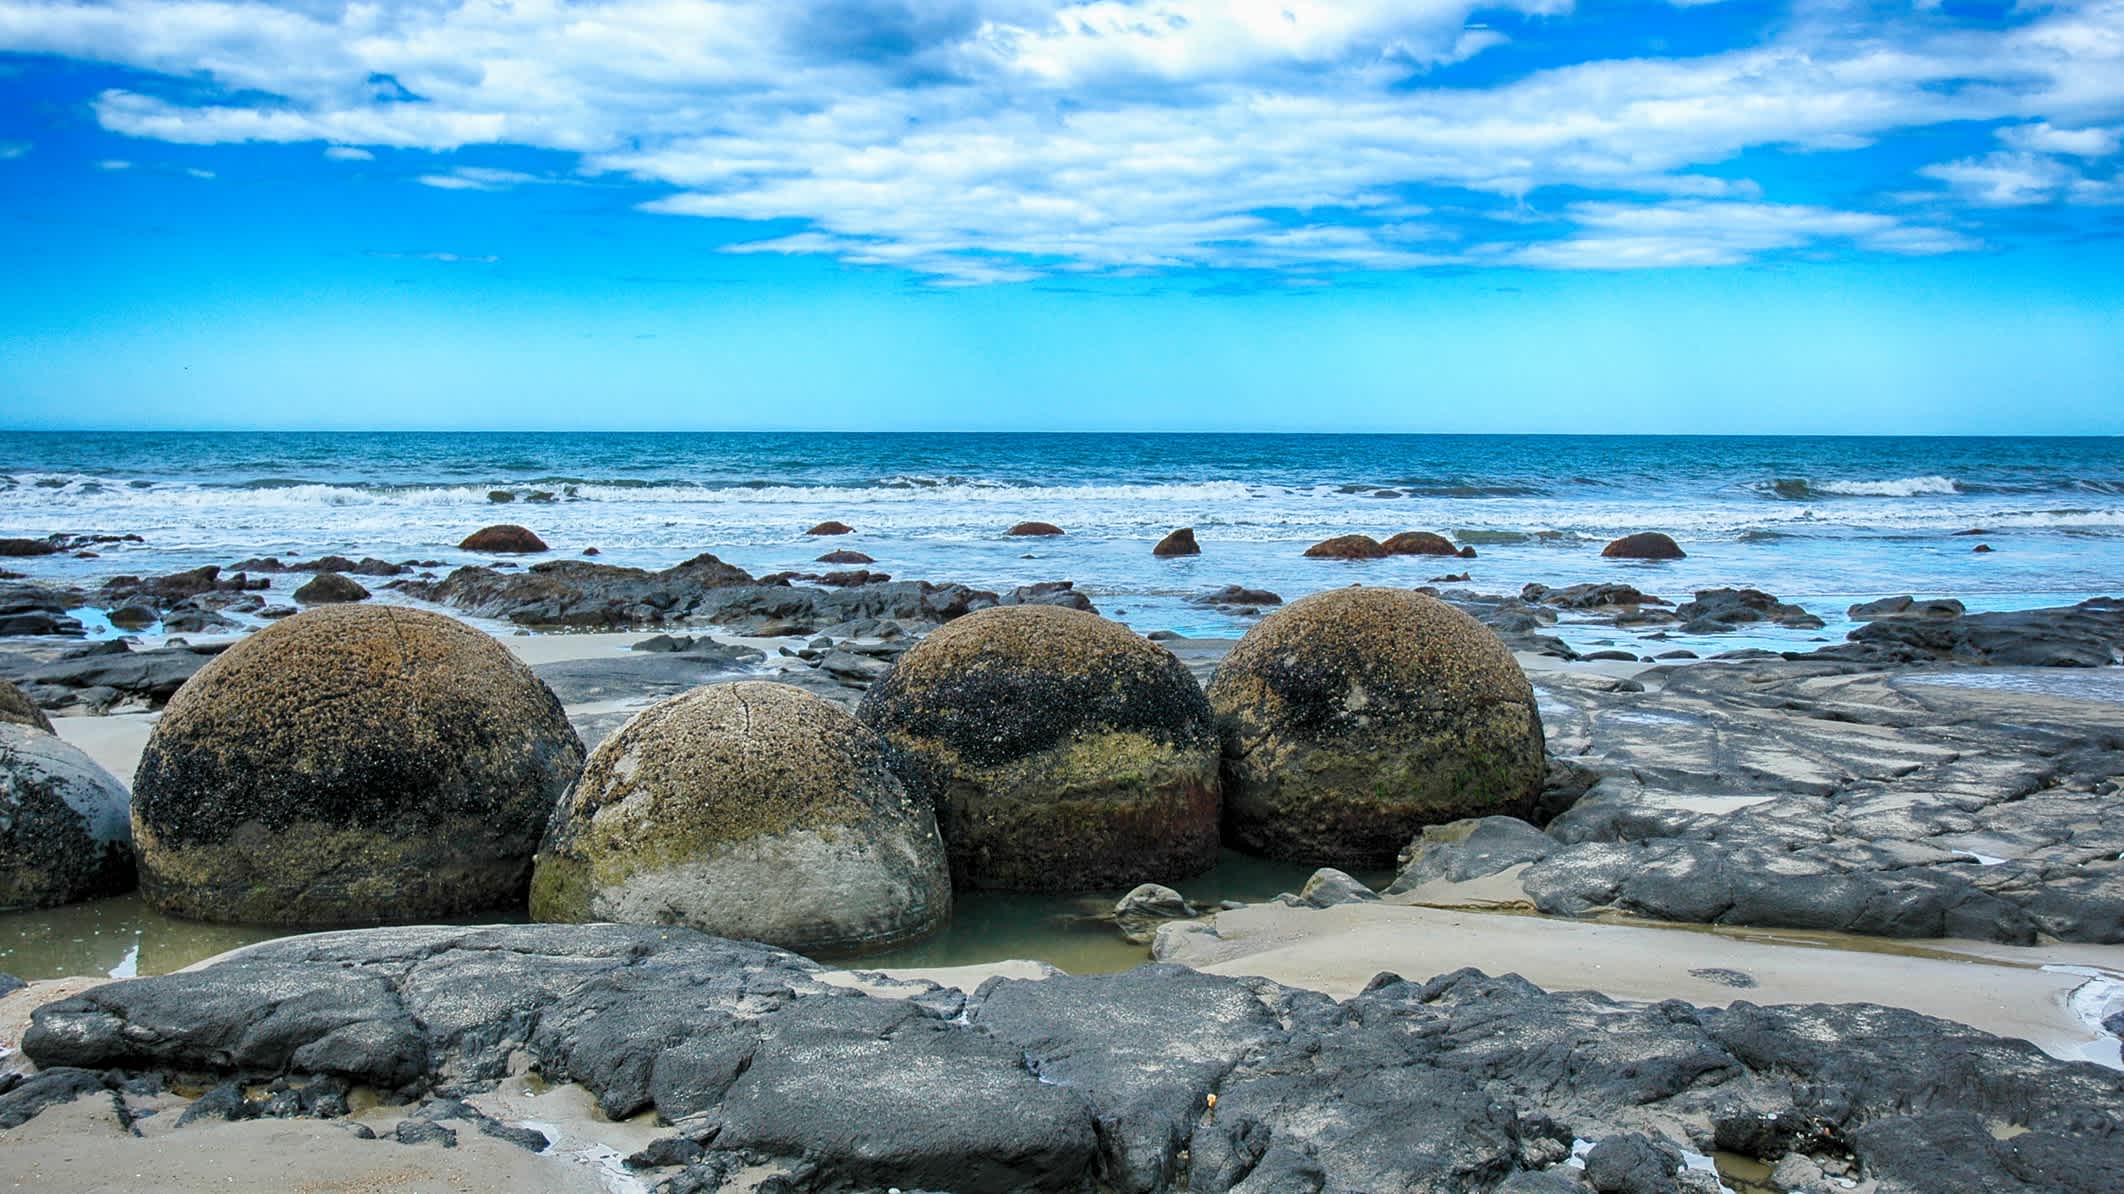 Moeraki Boulders sur la plage de Koekohe, près d'Oamaru, Nouvelle-Zélande.